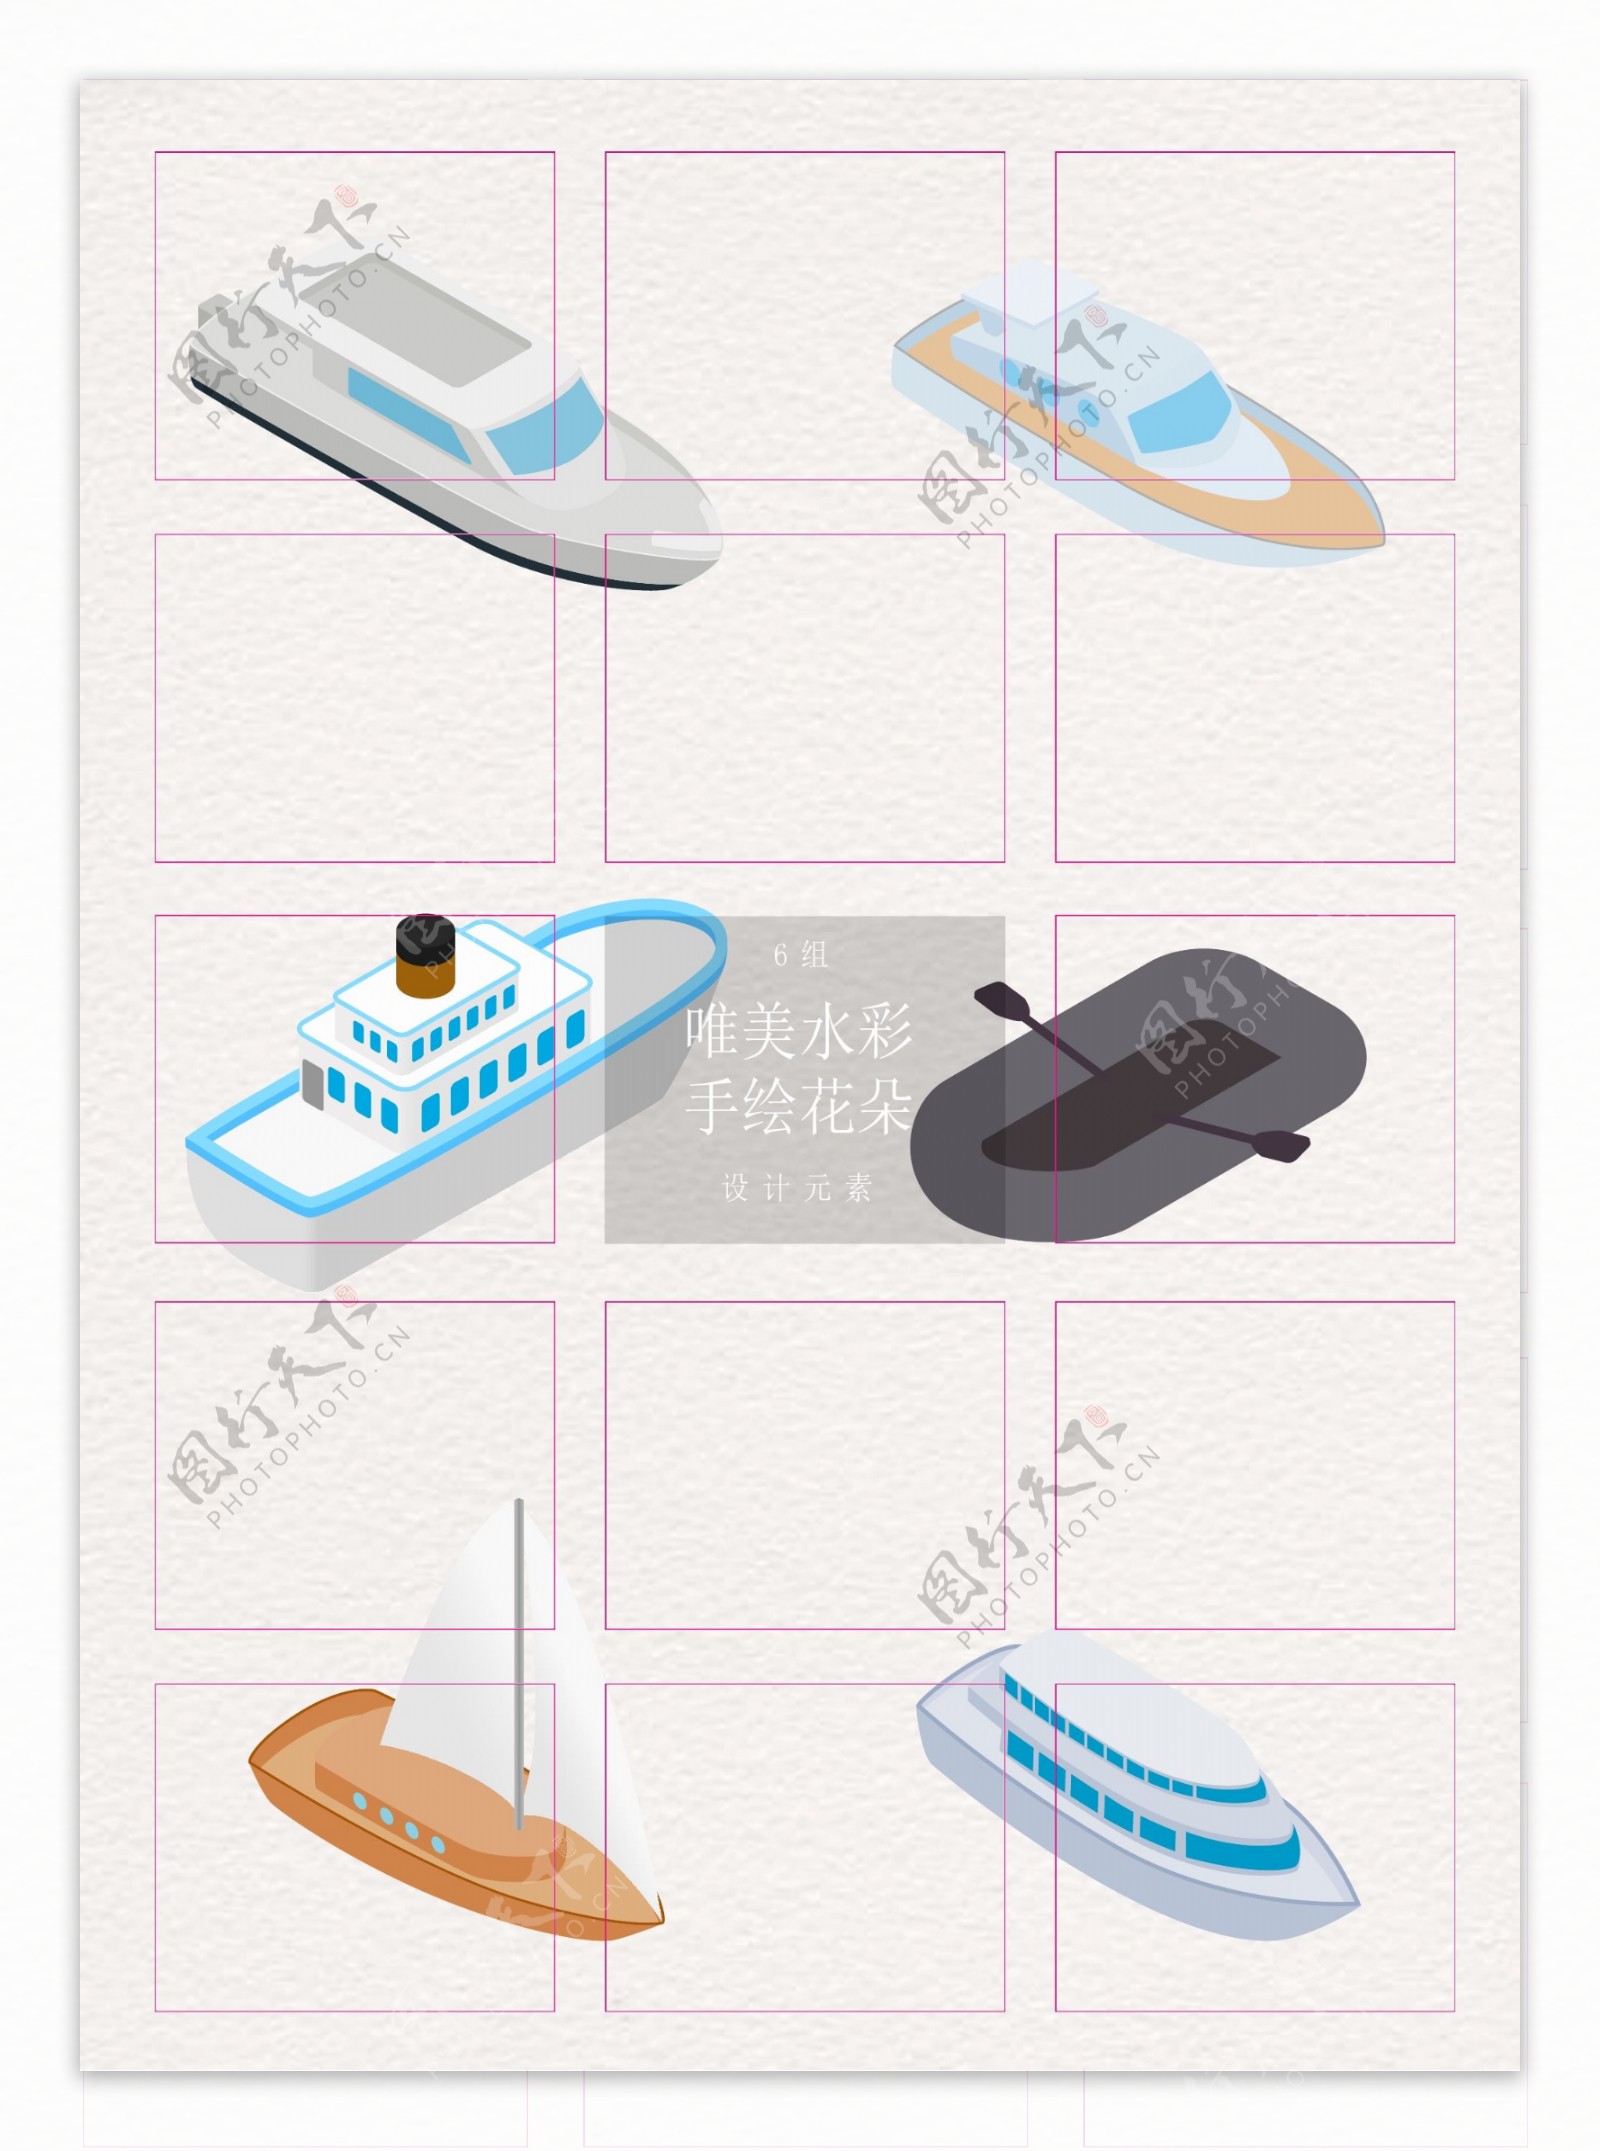 卡通矢量小船皮艇交通工具设计